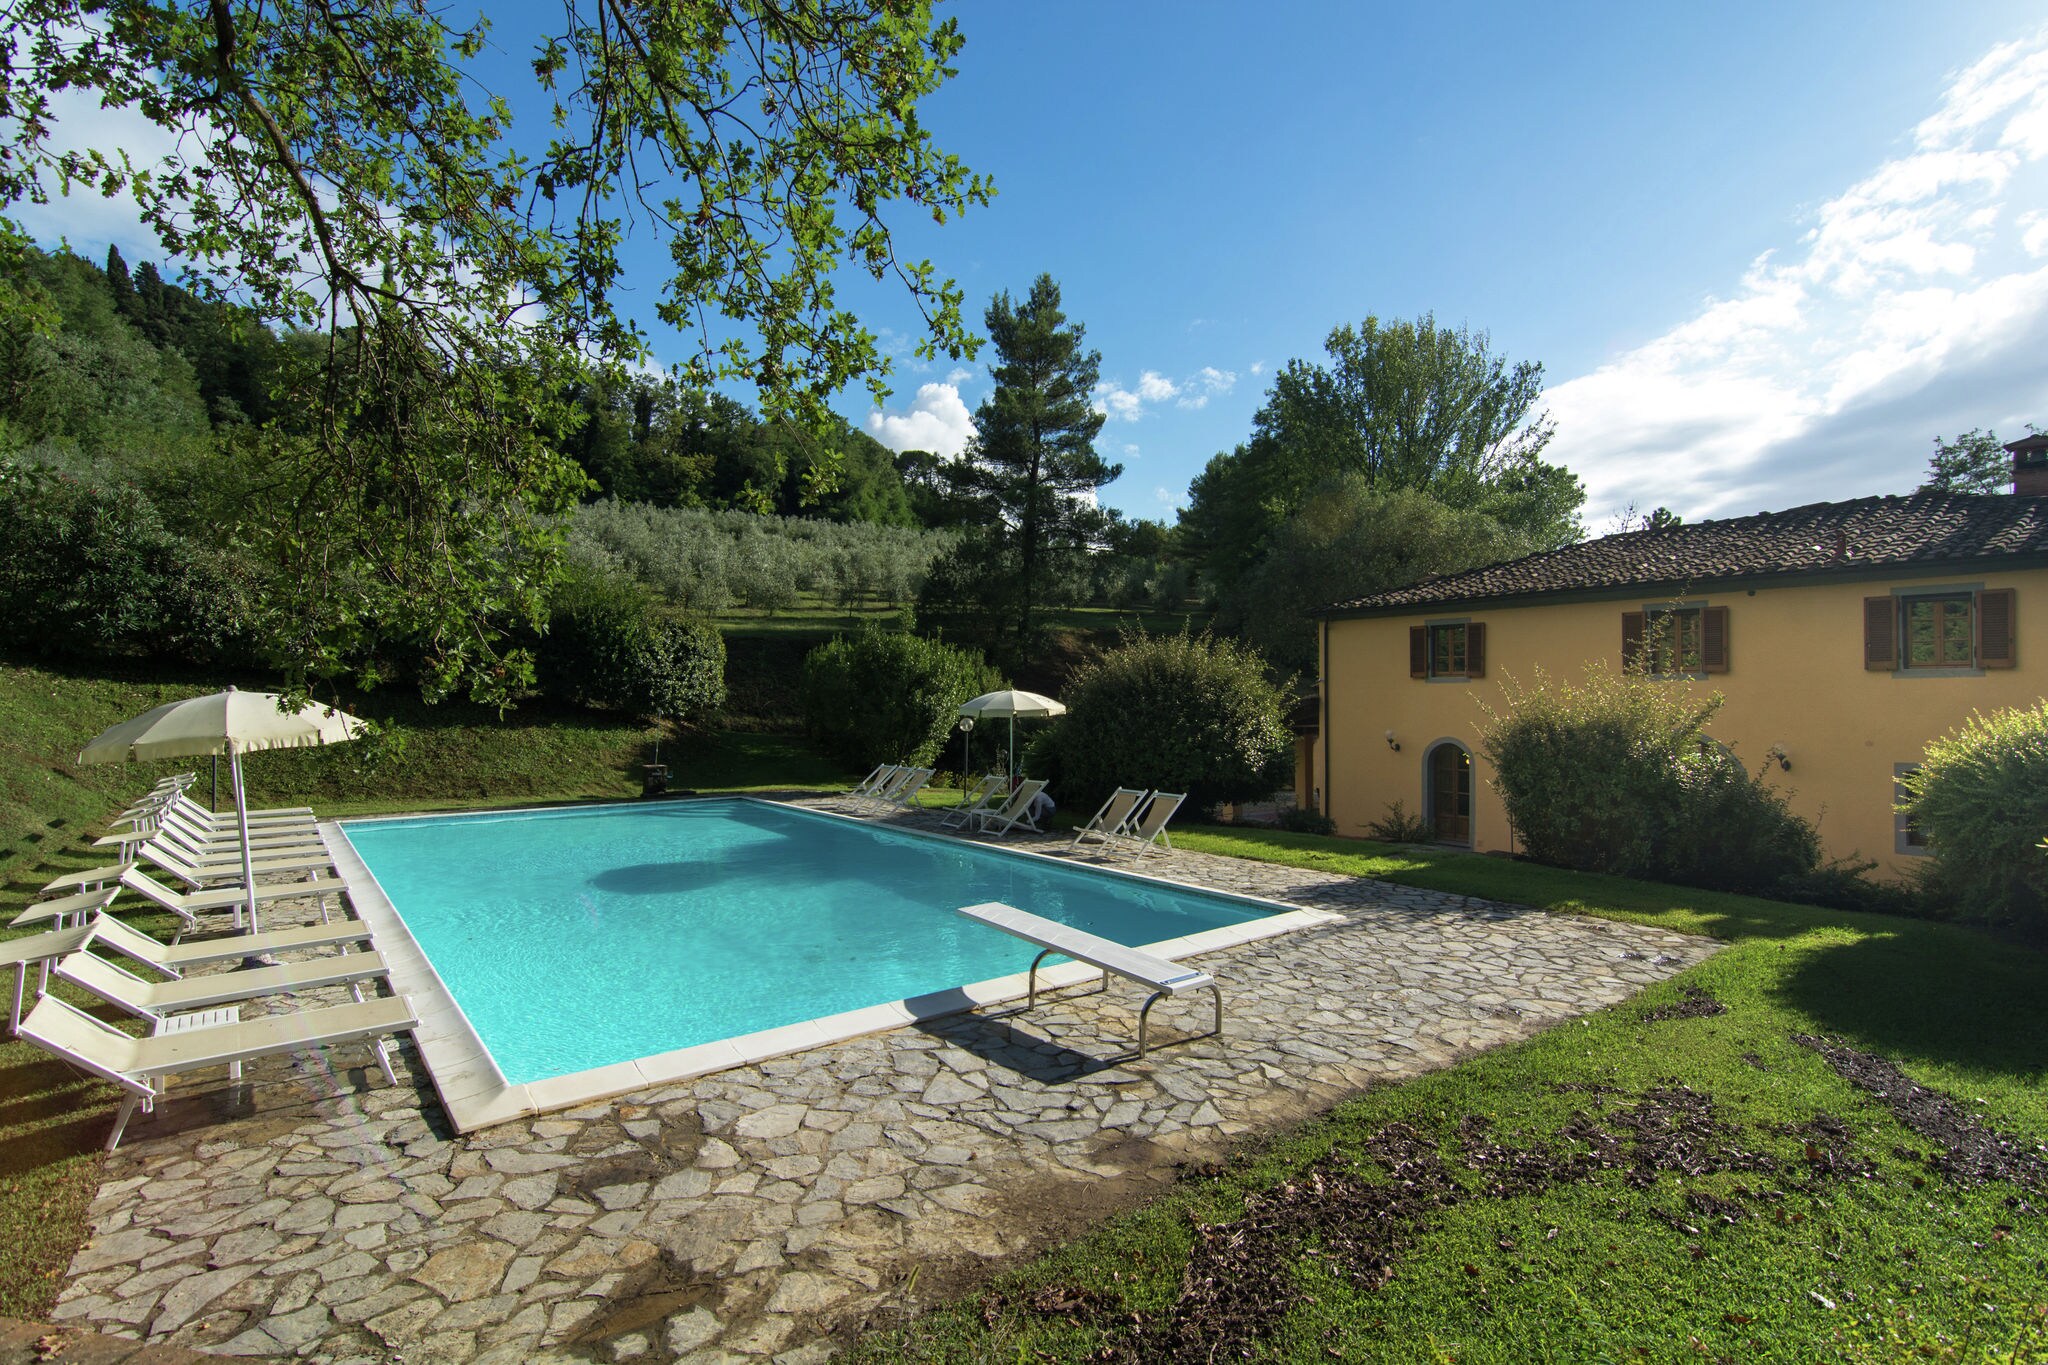 Mooie, Toscaanse boerderij met groot zwembad